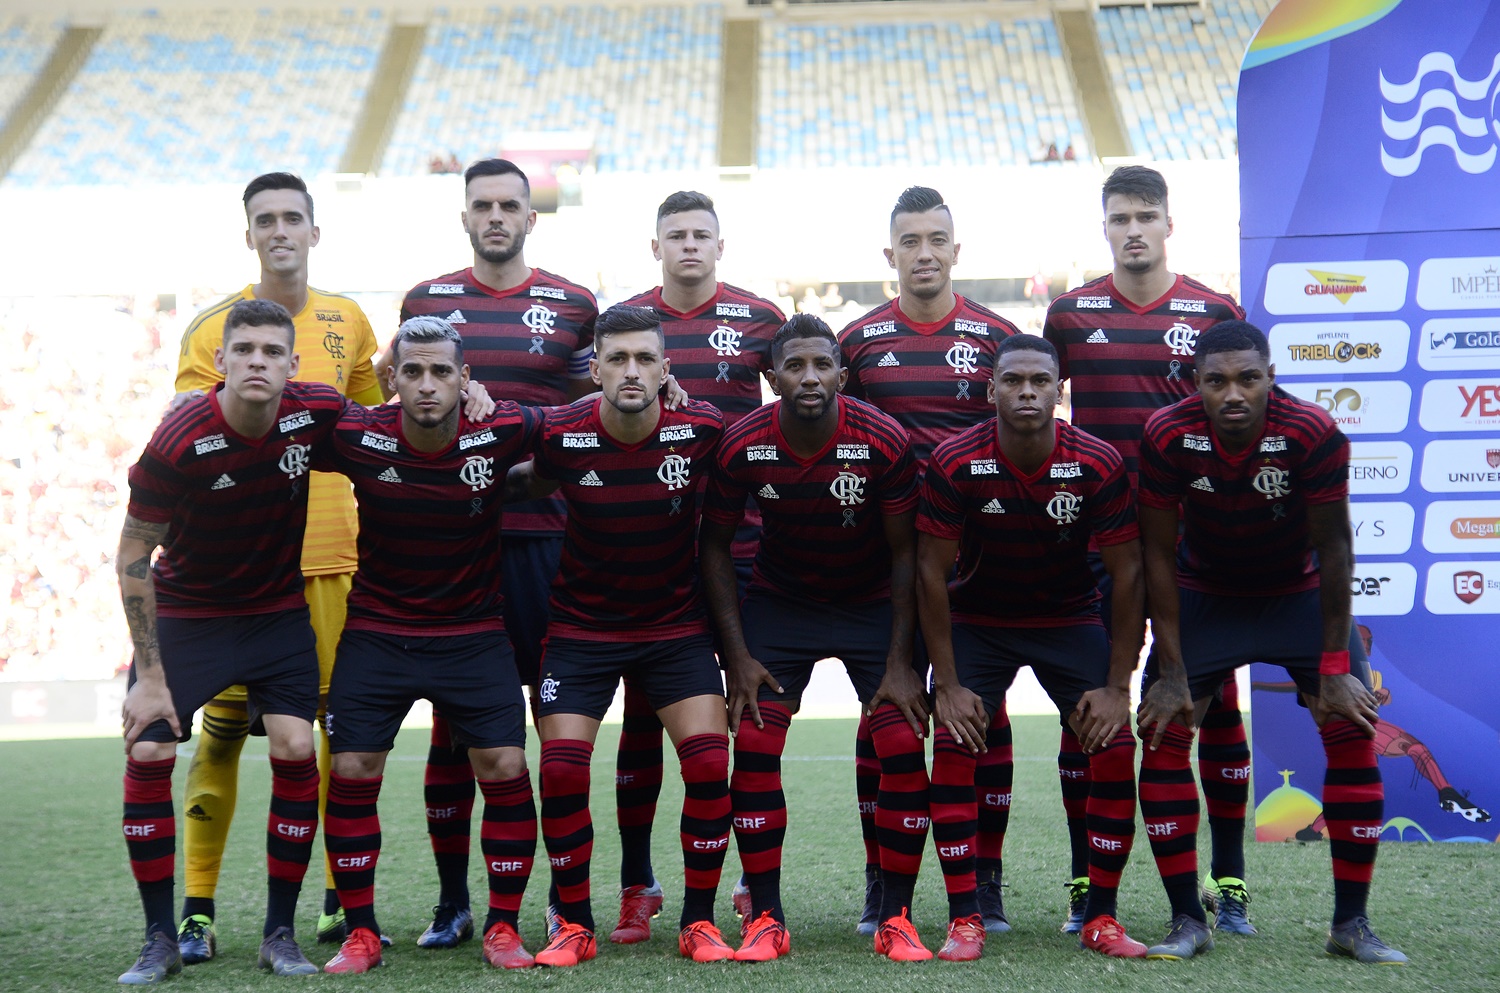 Equipe do Flamengo que venceu a Taça Rio